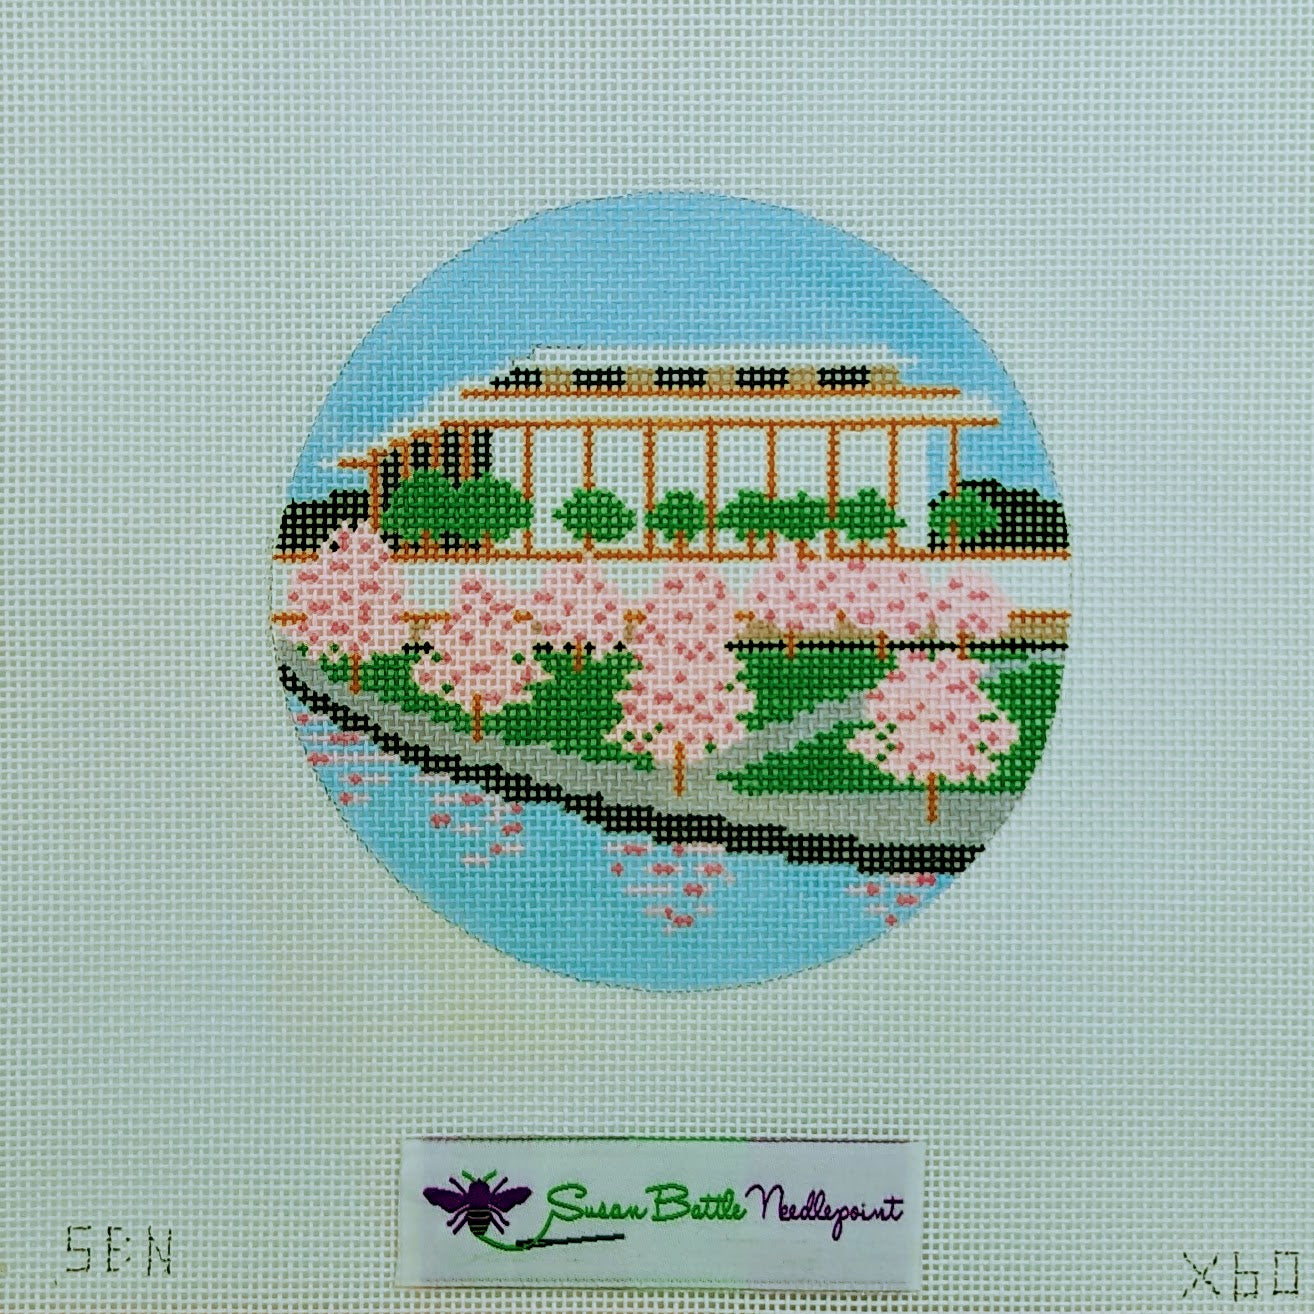 Cherry Blossom Tote Bag – shop.kennedy-center